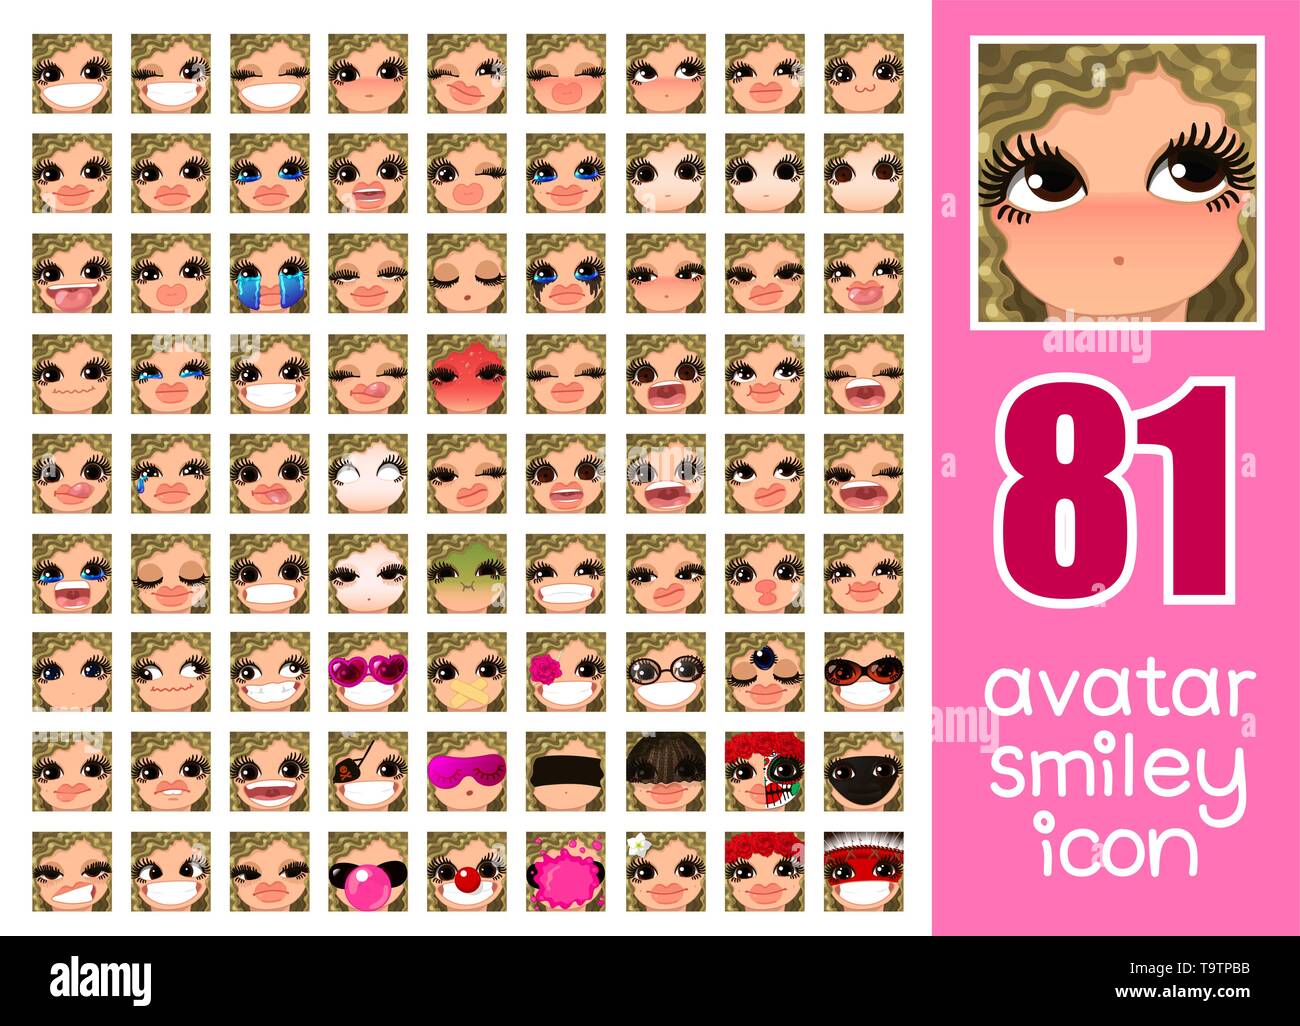 Vector SET-81 Médias sociaux avatars girl Illustration de Vecteur